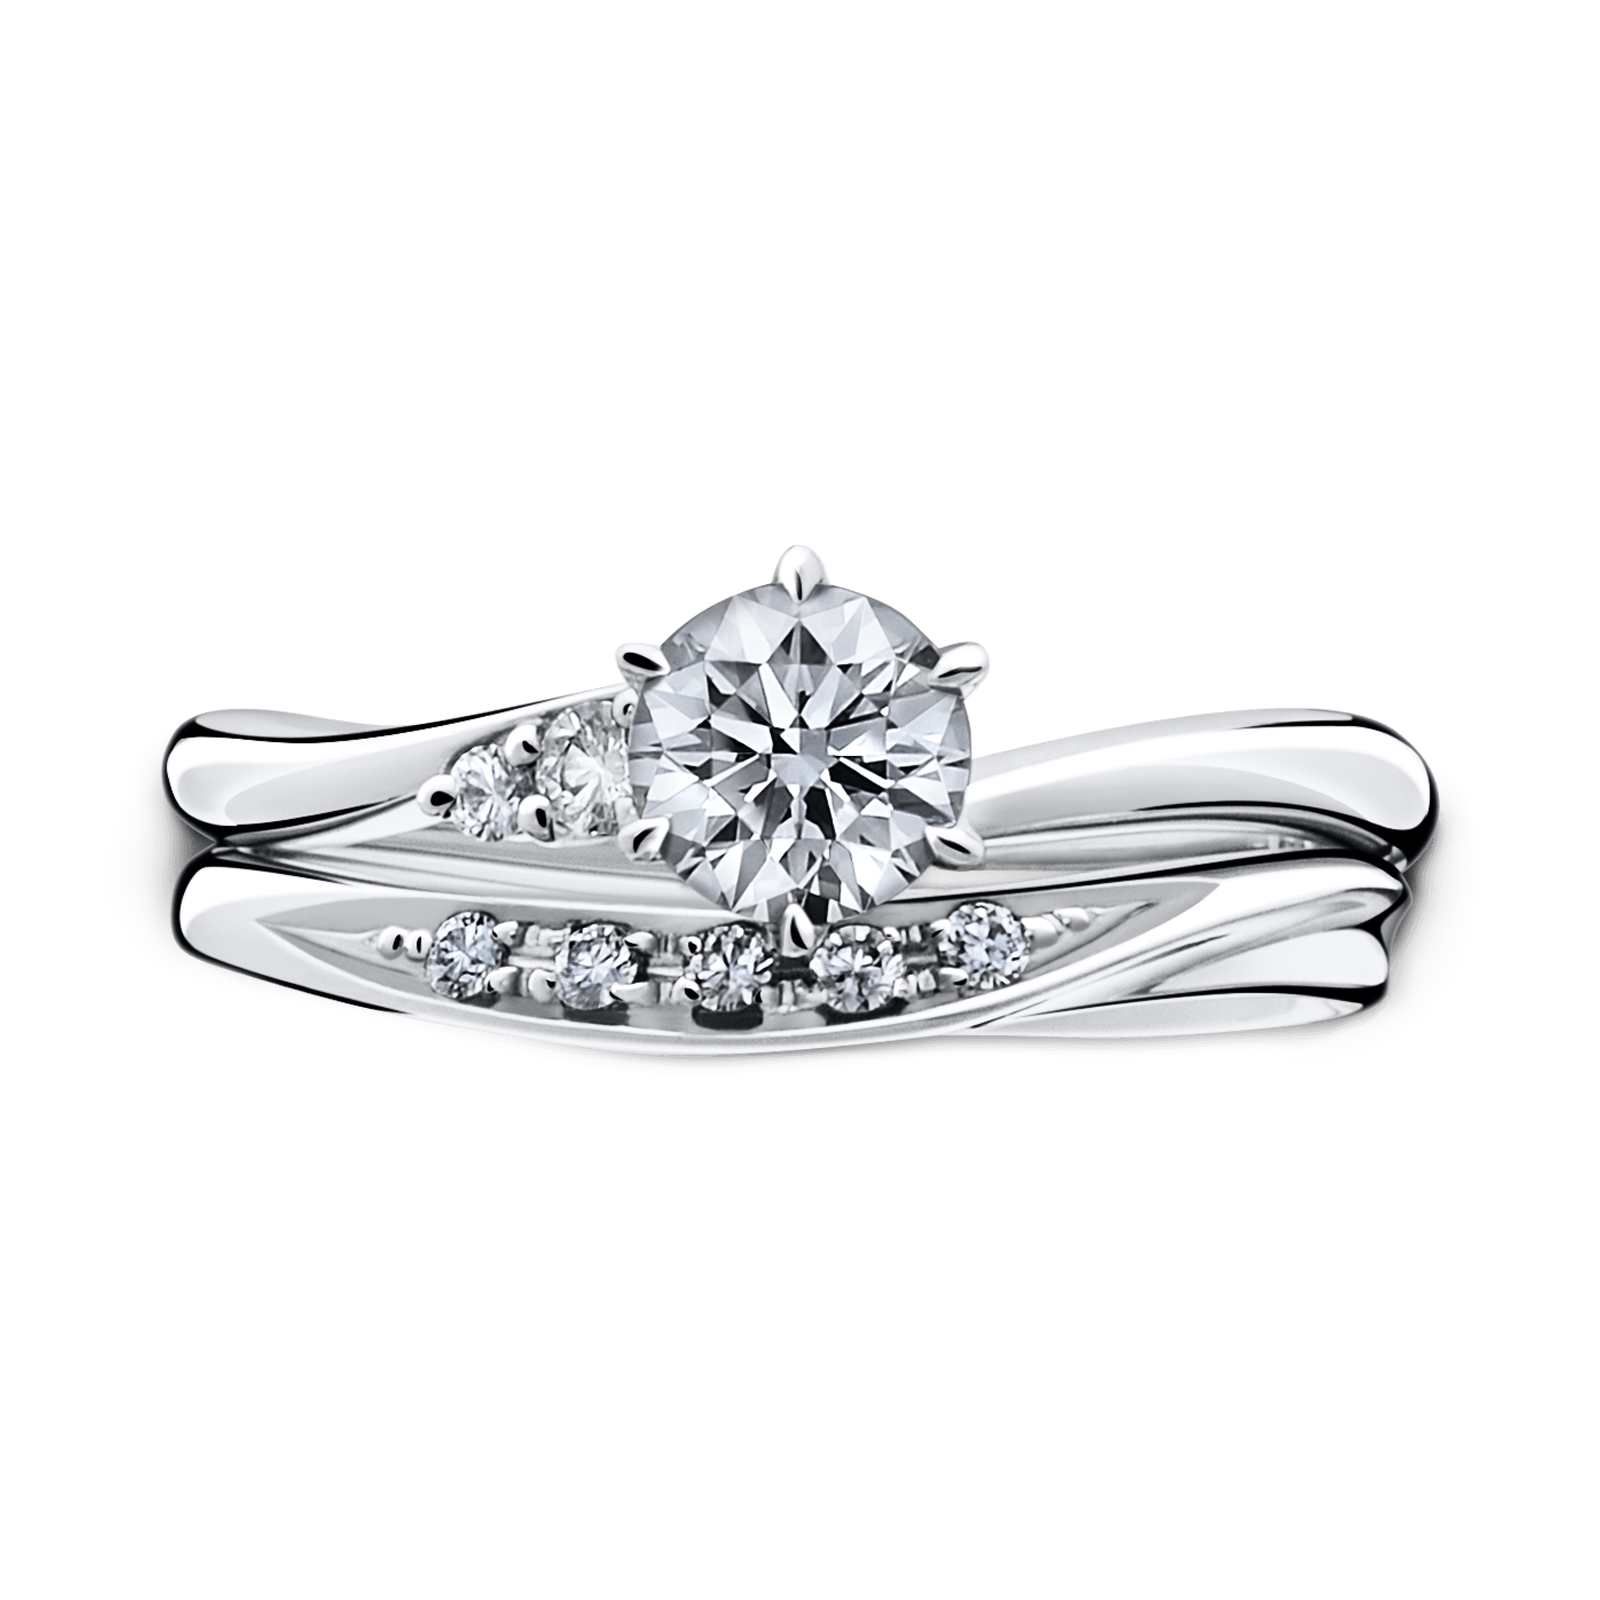 涙形ダイヤモンドの指輪 11号 4g 結婚指輪 Silver 非磁性